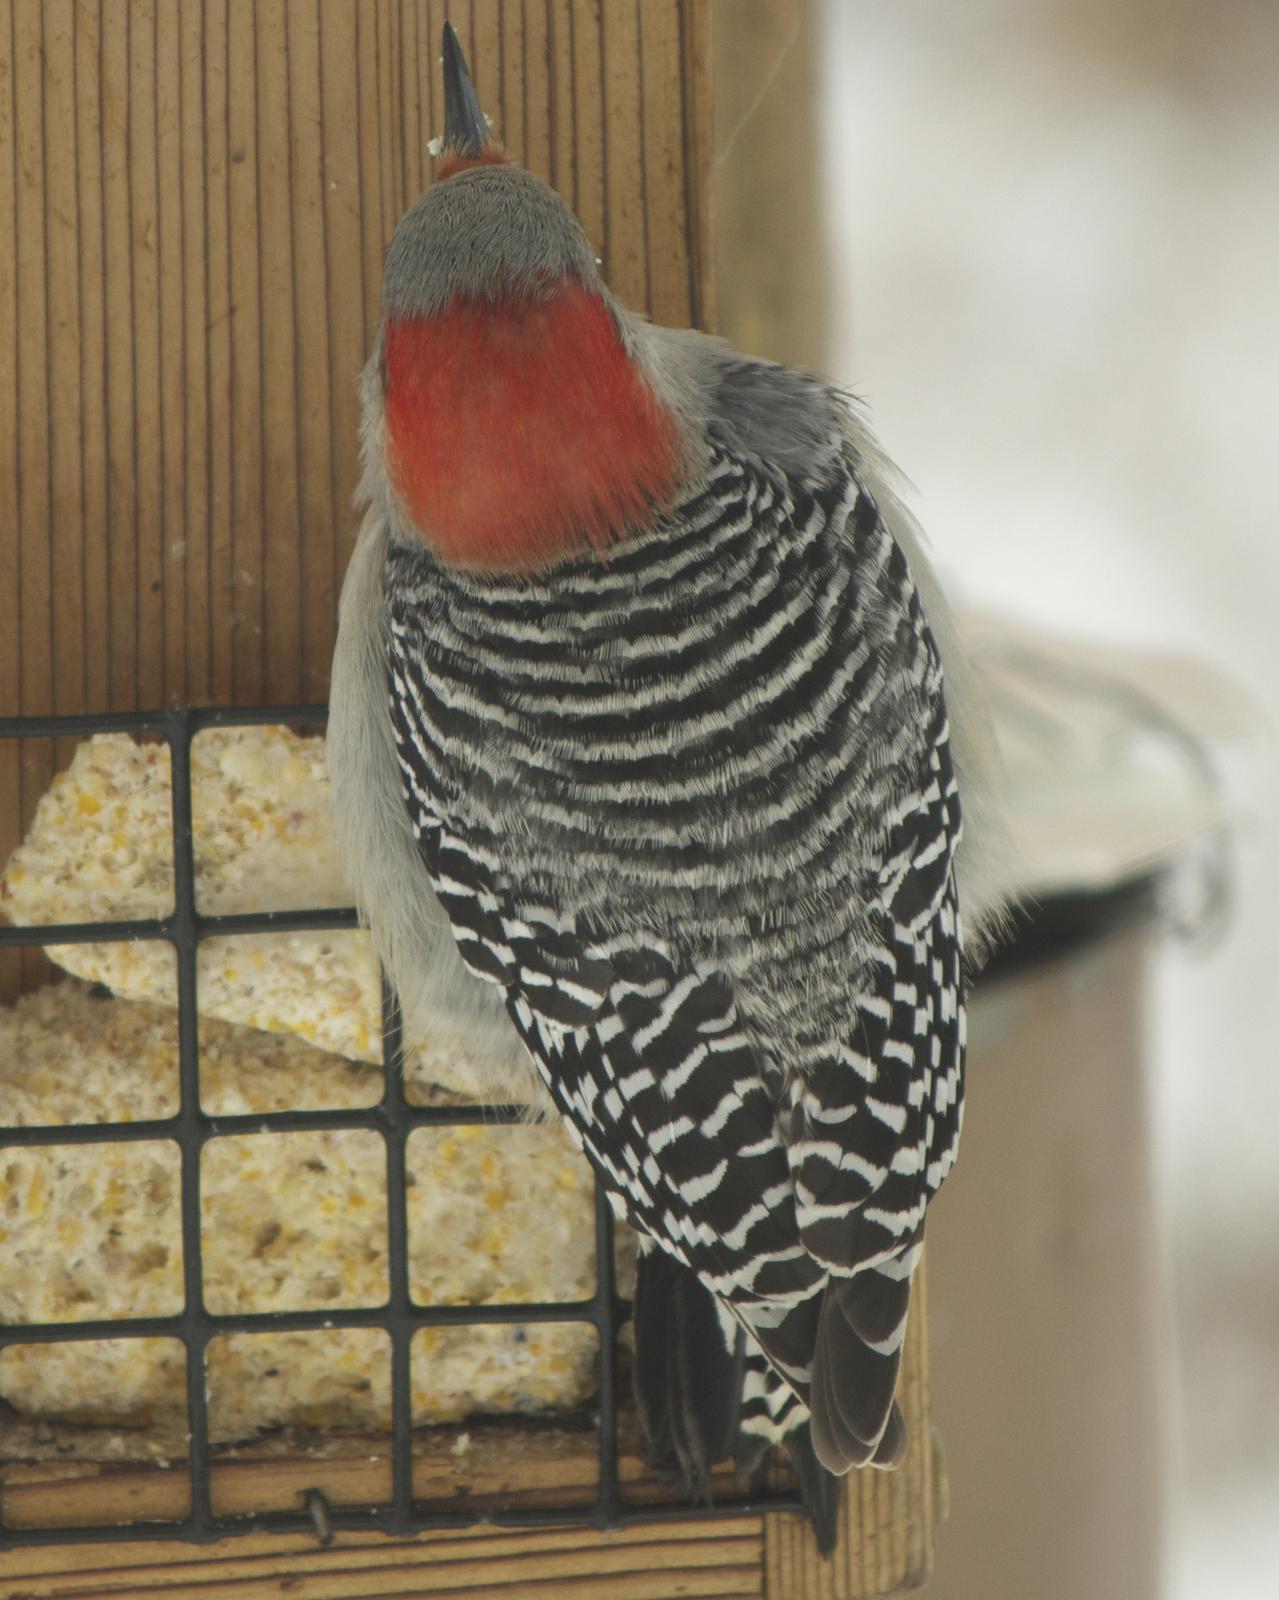 Red-bellied Woodpecker Photo by Mark Baldwin